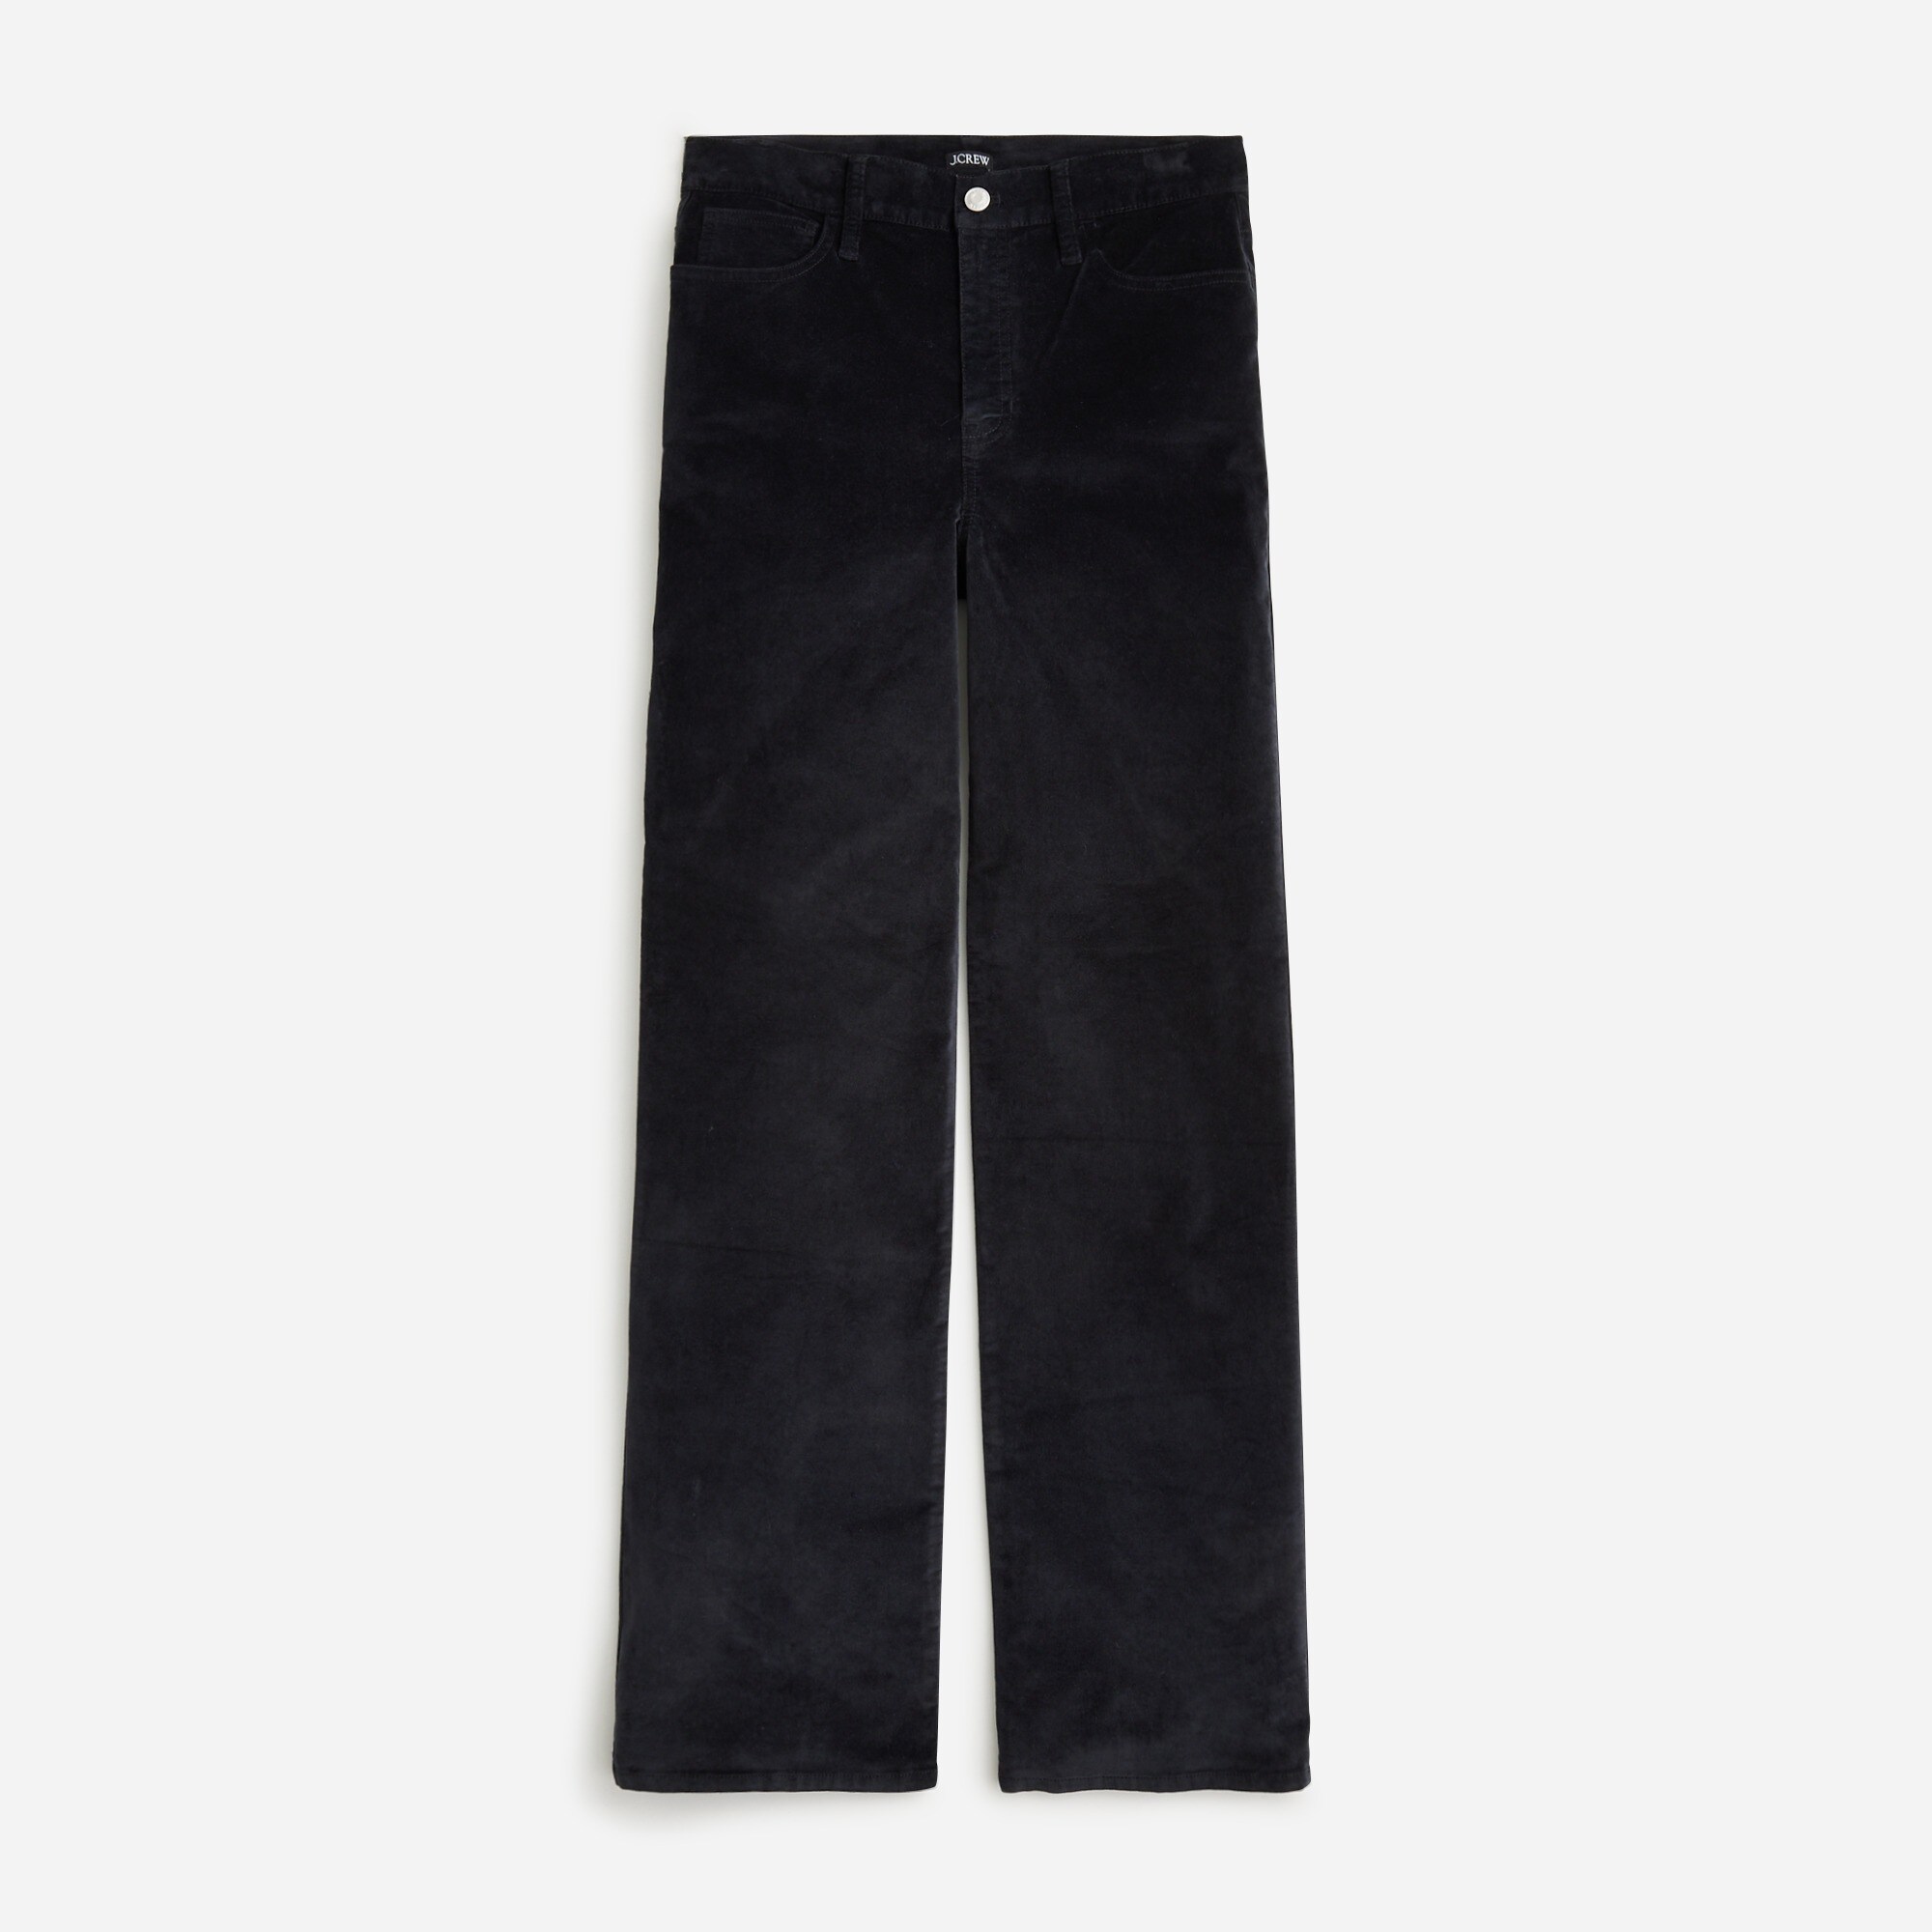  Full-length slim wide-leg pant in stretch velvet